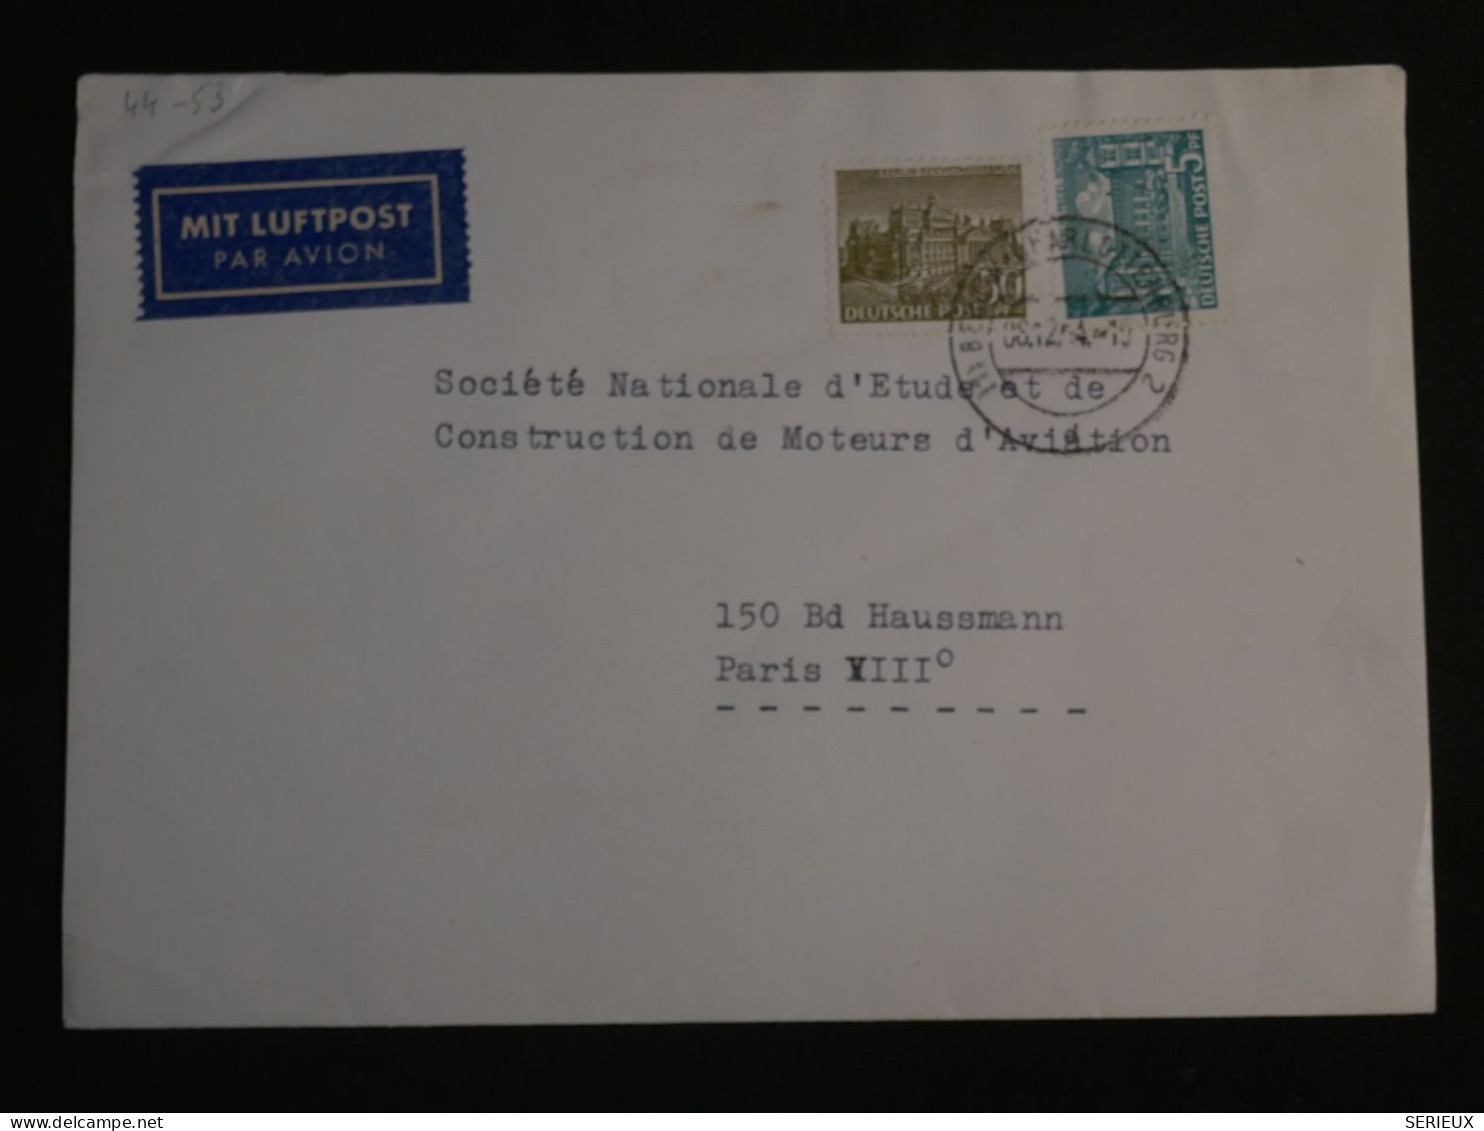 DO16  ALLEMAGNE LETTRE 1938 BERLIN A PARIS  FRANCE  +AFF. INTERESSANT+ +++++ - Storia Postale